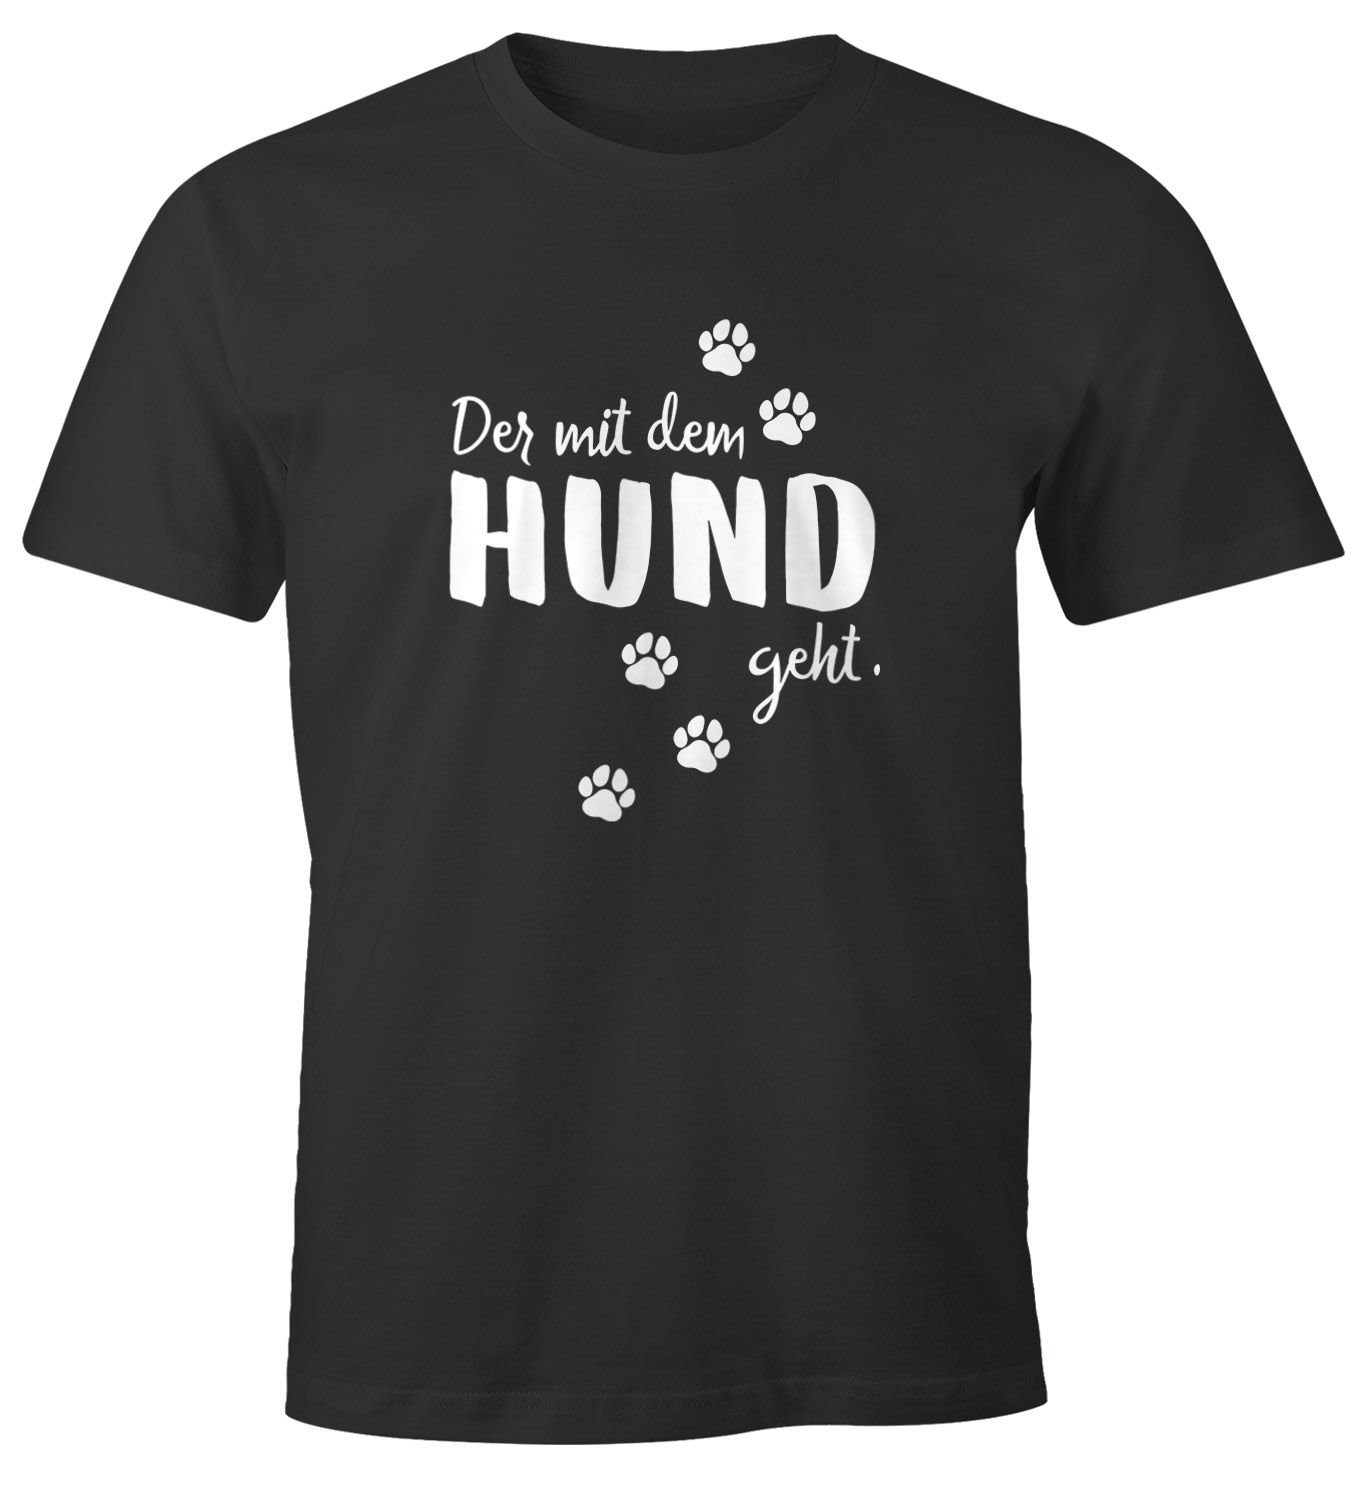 mit Print-Shirt dem Herren Shirt Pfoten mit Hundemotiv Der Hund T-Shirt mit geht Moonworks® Hundesprüche MoonWorks Pfotenabdrücke Print